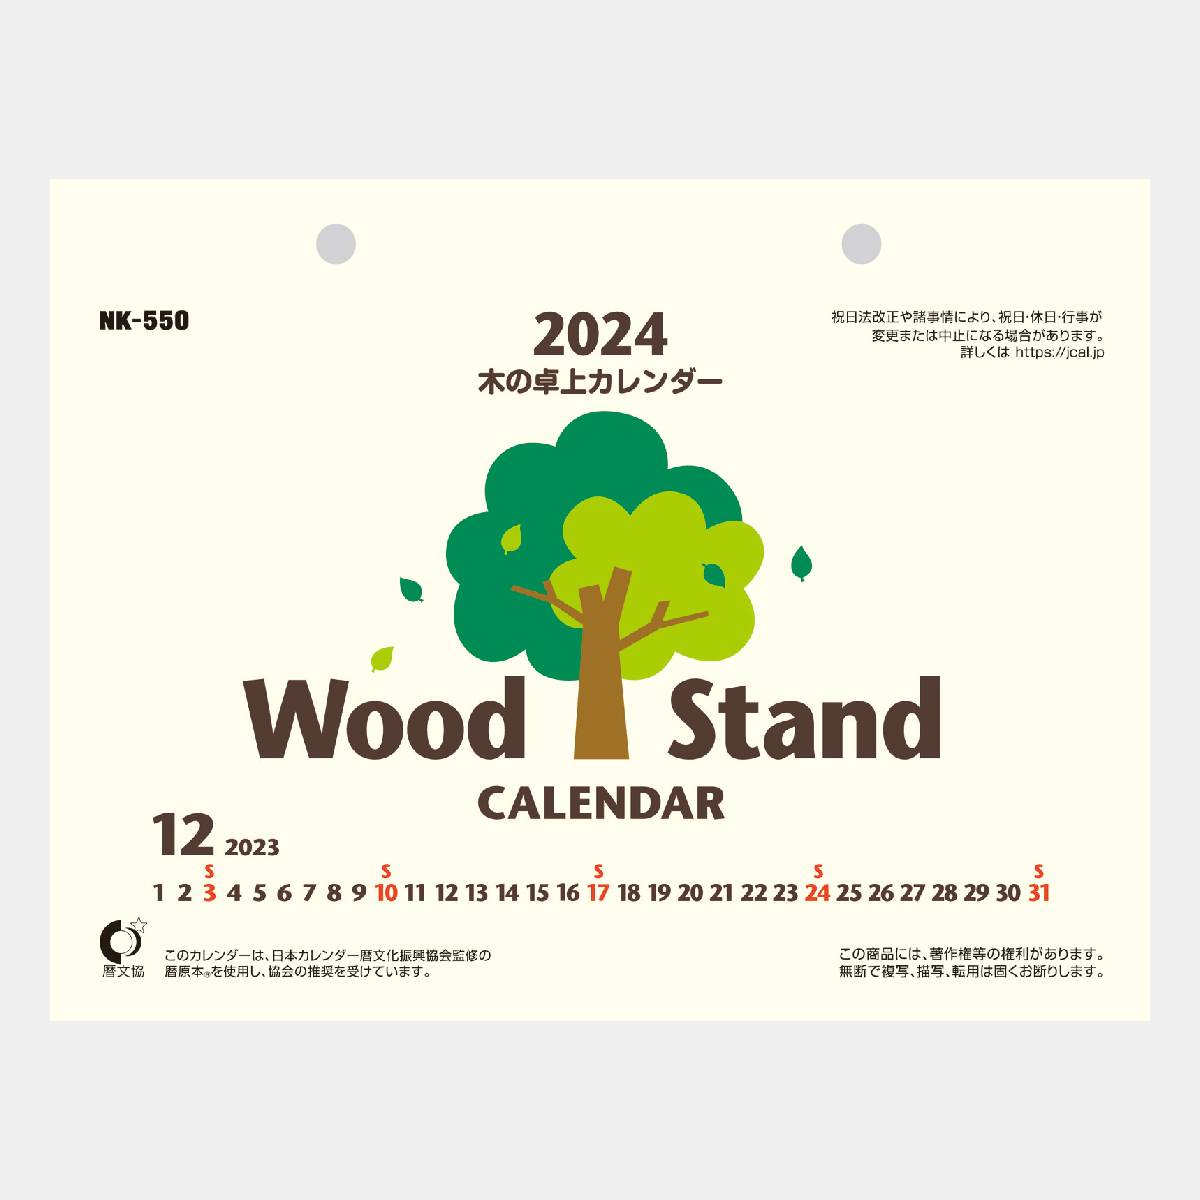 NK-550 木の卓上カレンダー 2022年版の名入れカレンダーを格安で販売 